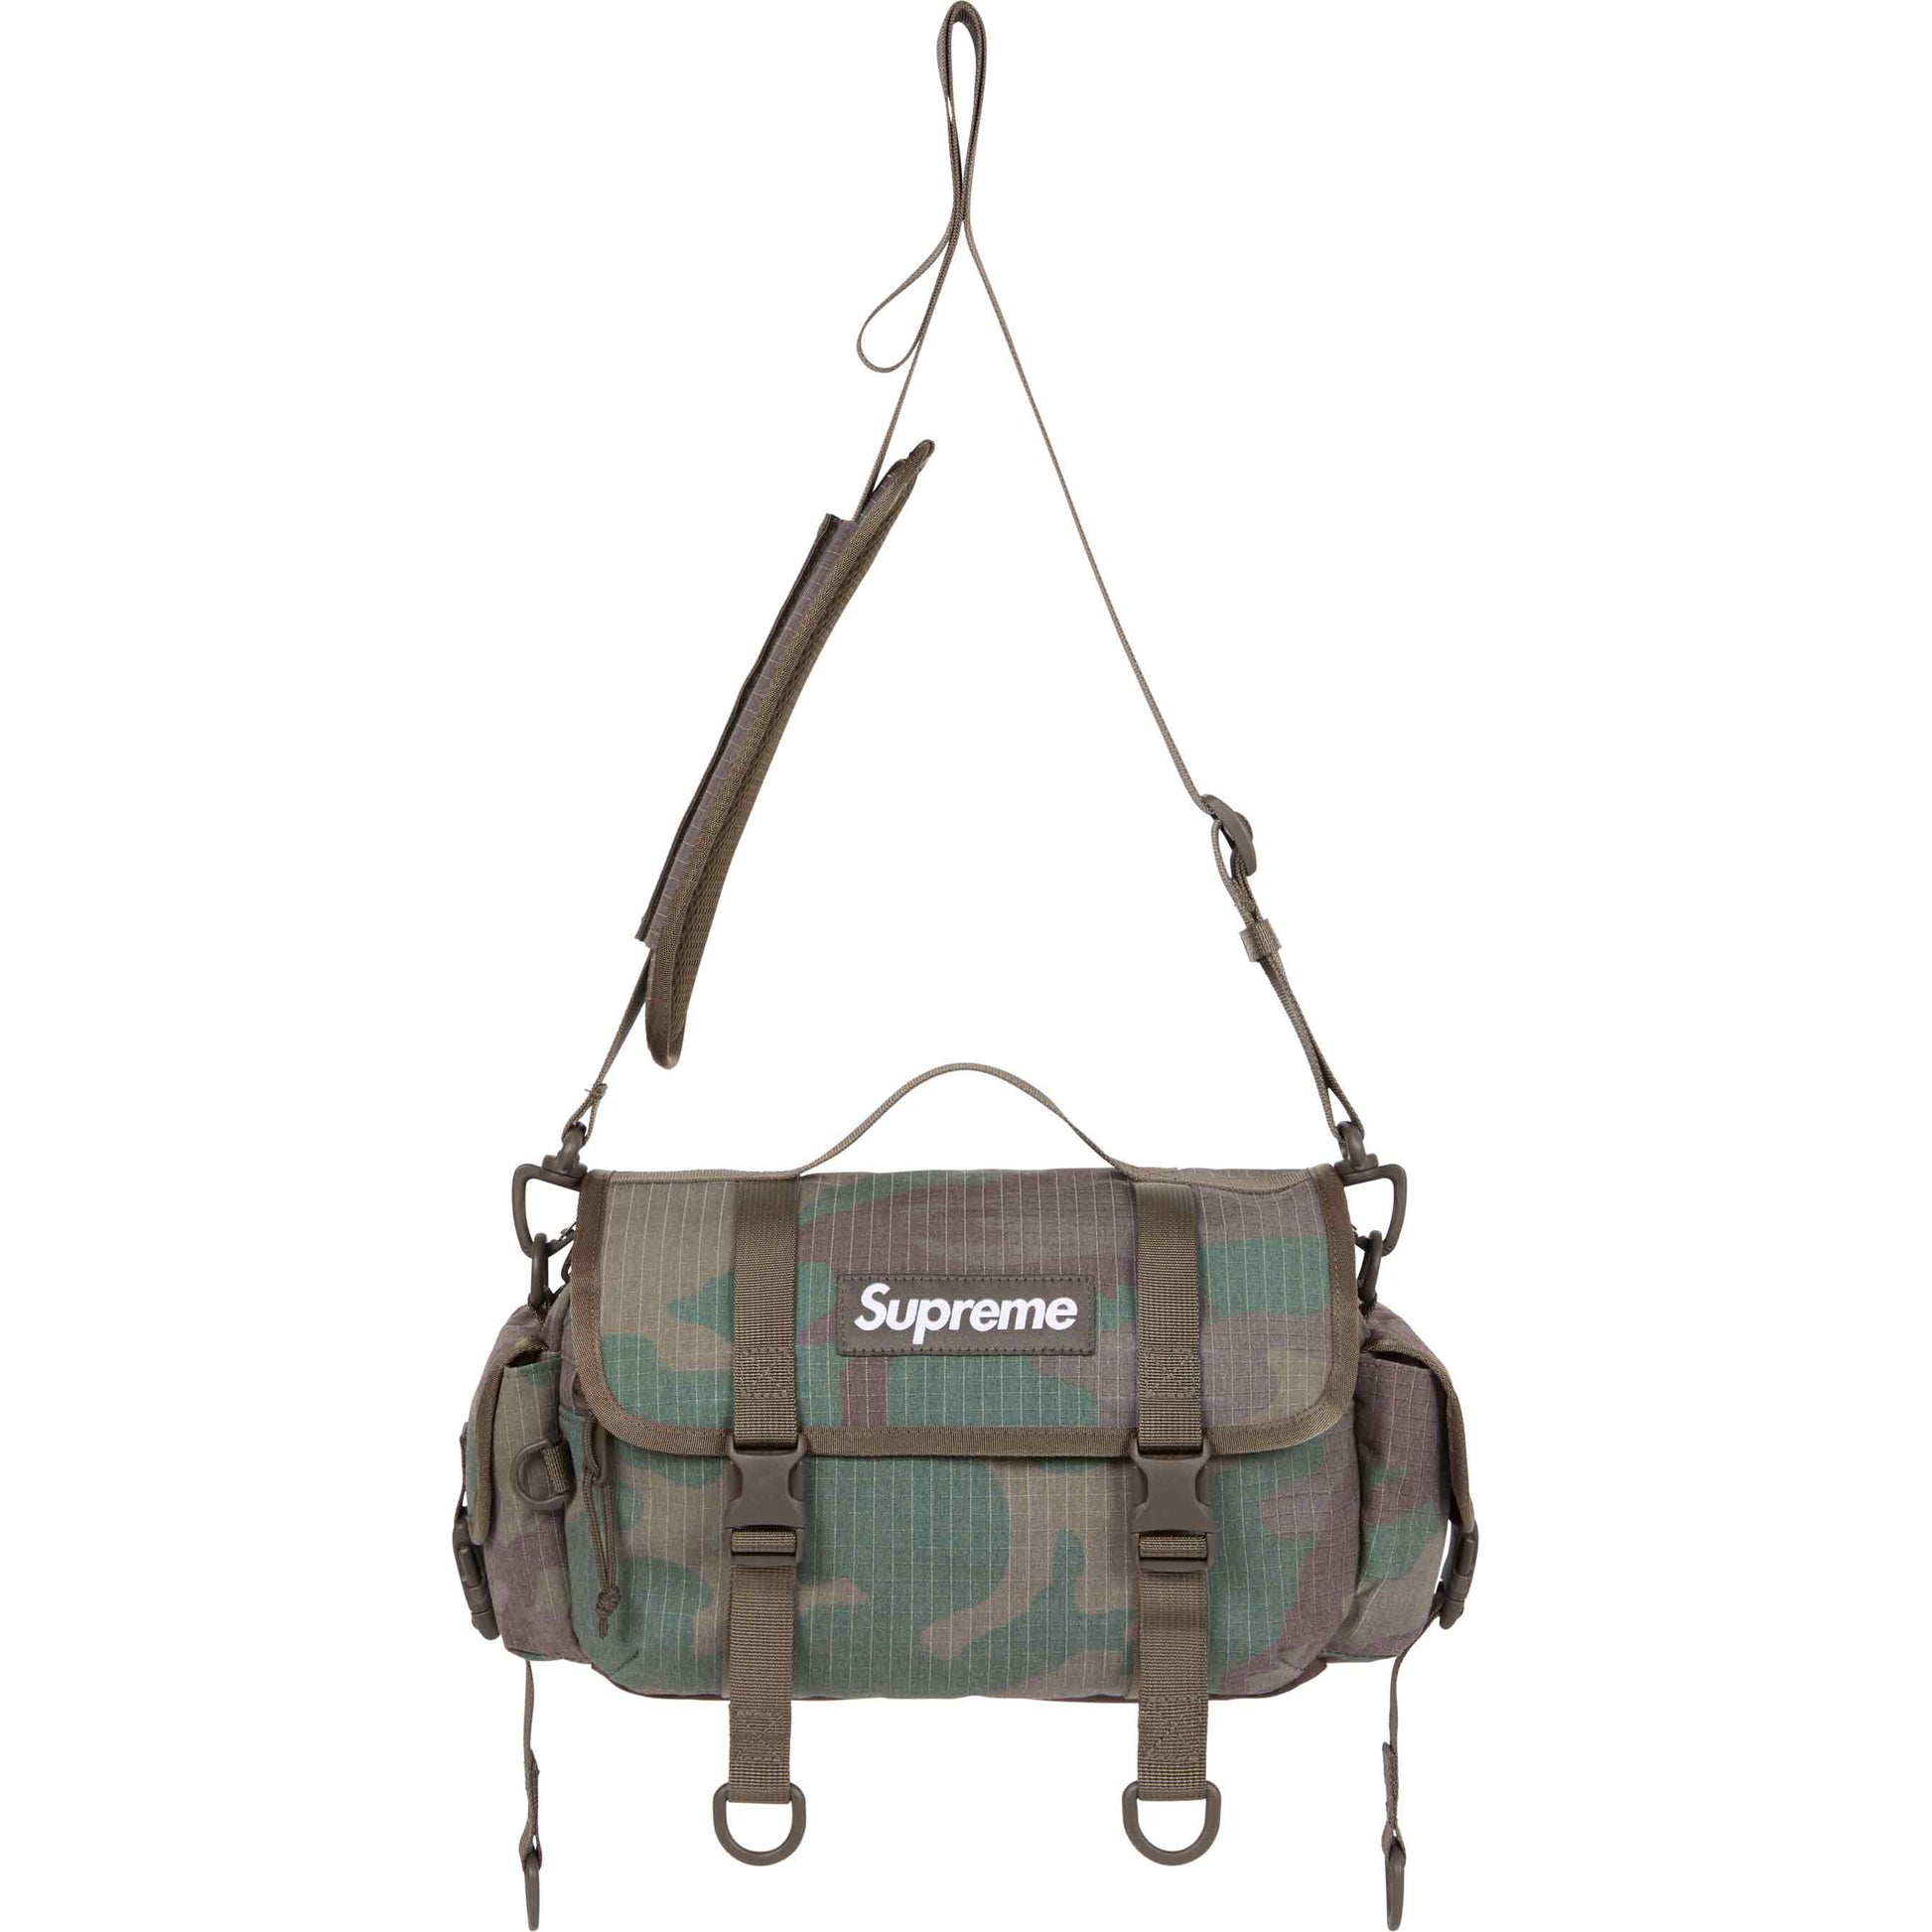 SUPREME - Mini Duffle Bag "Camo" - THE GAME